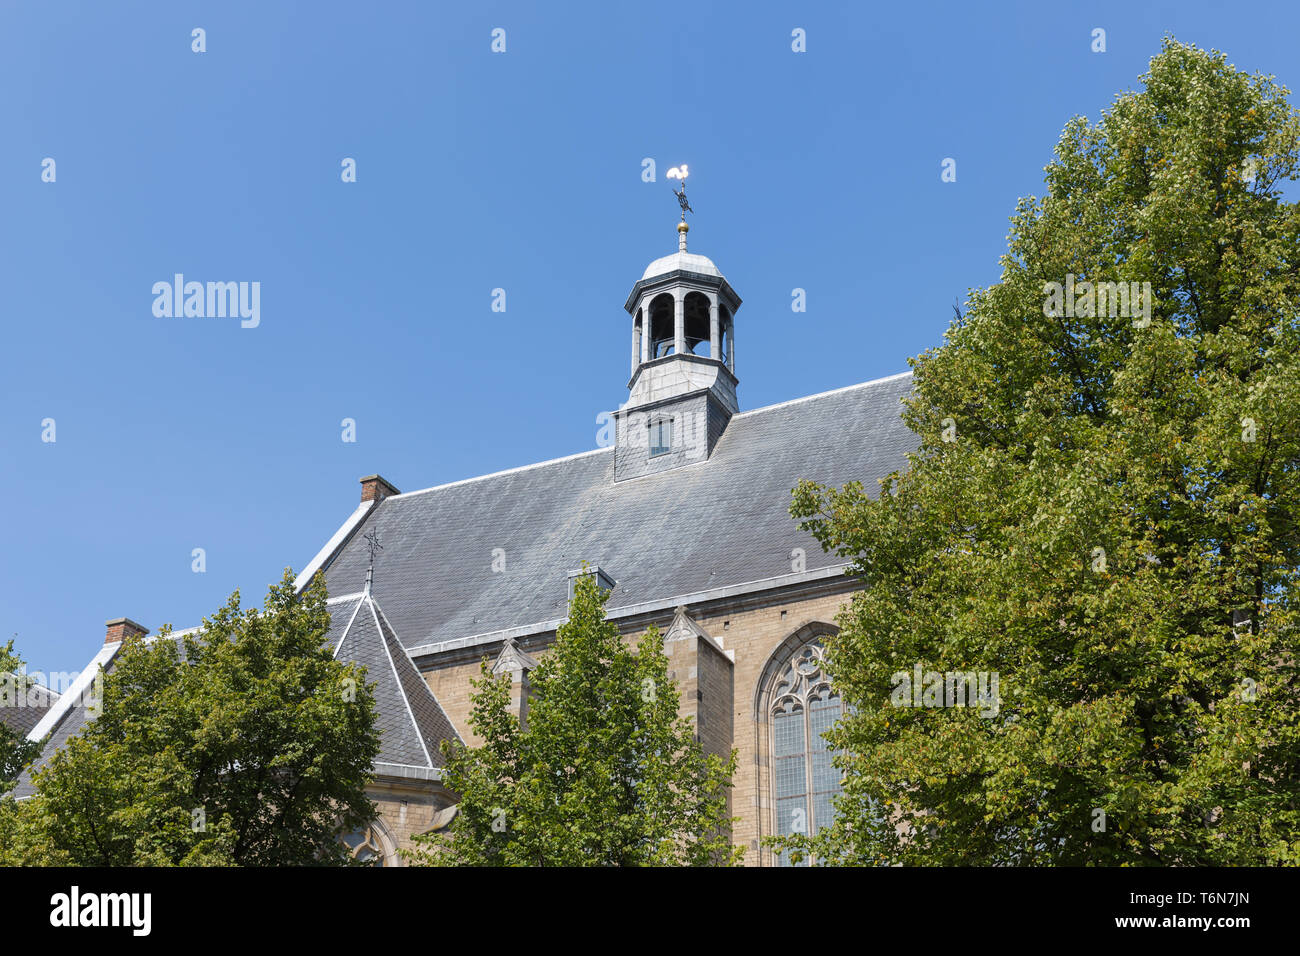 La Iglesia holandesa con tejado de pizarra contra un cielo azul Foto de stock